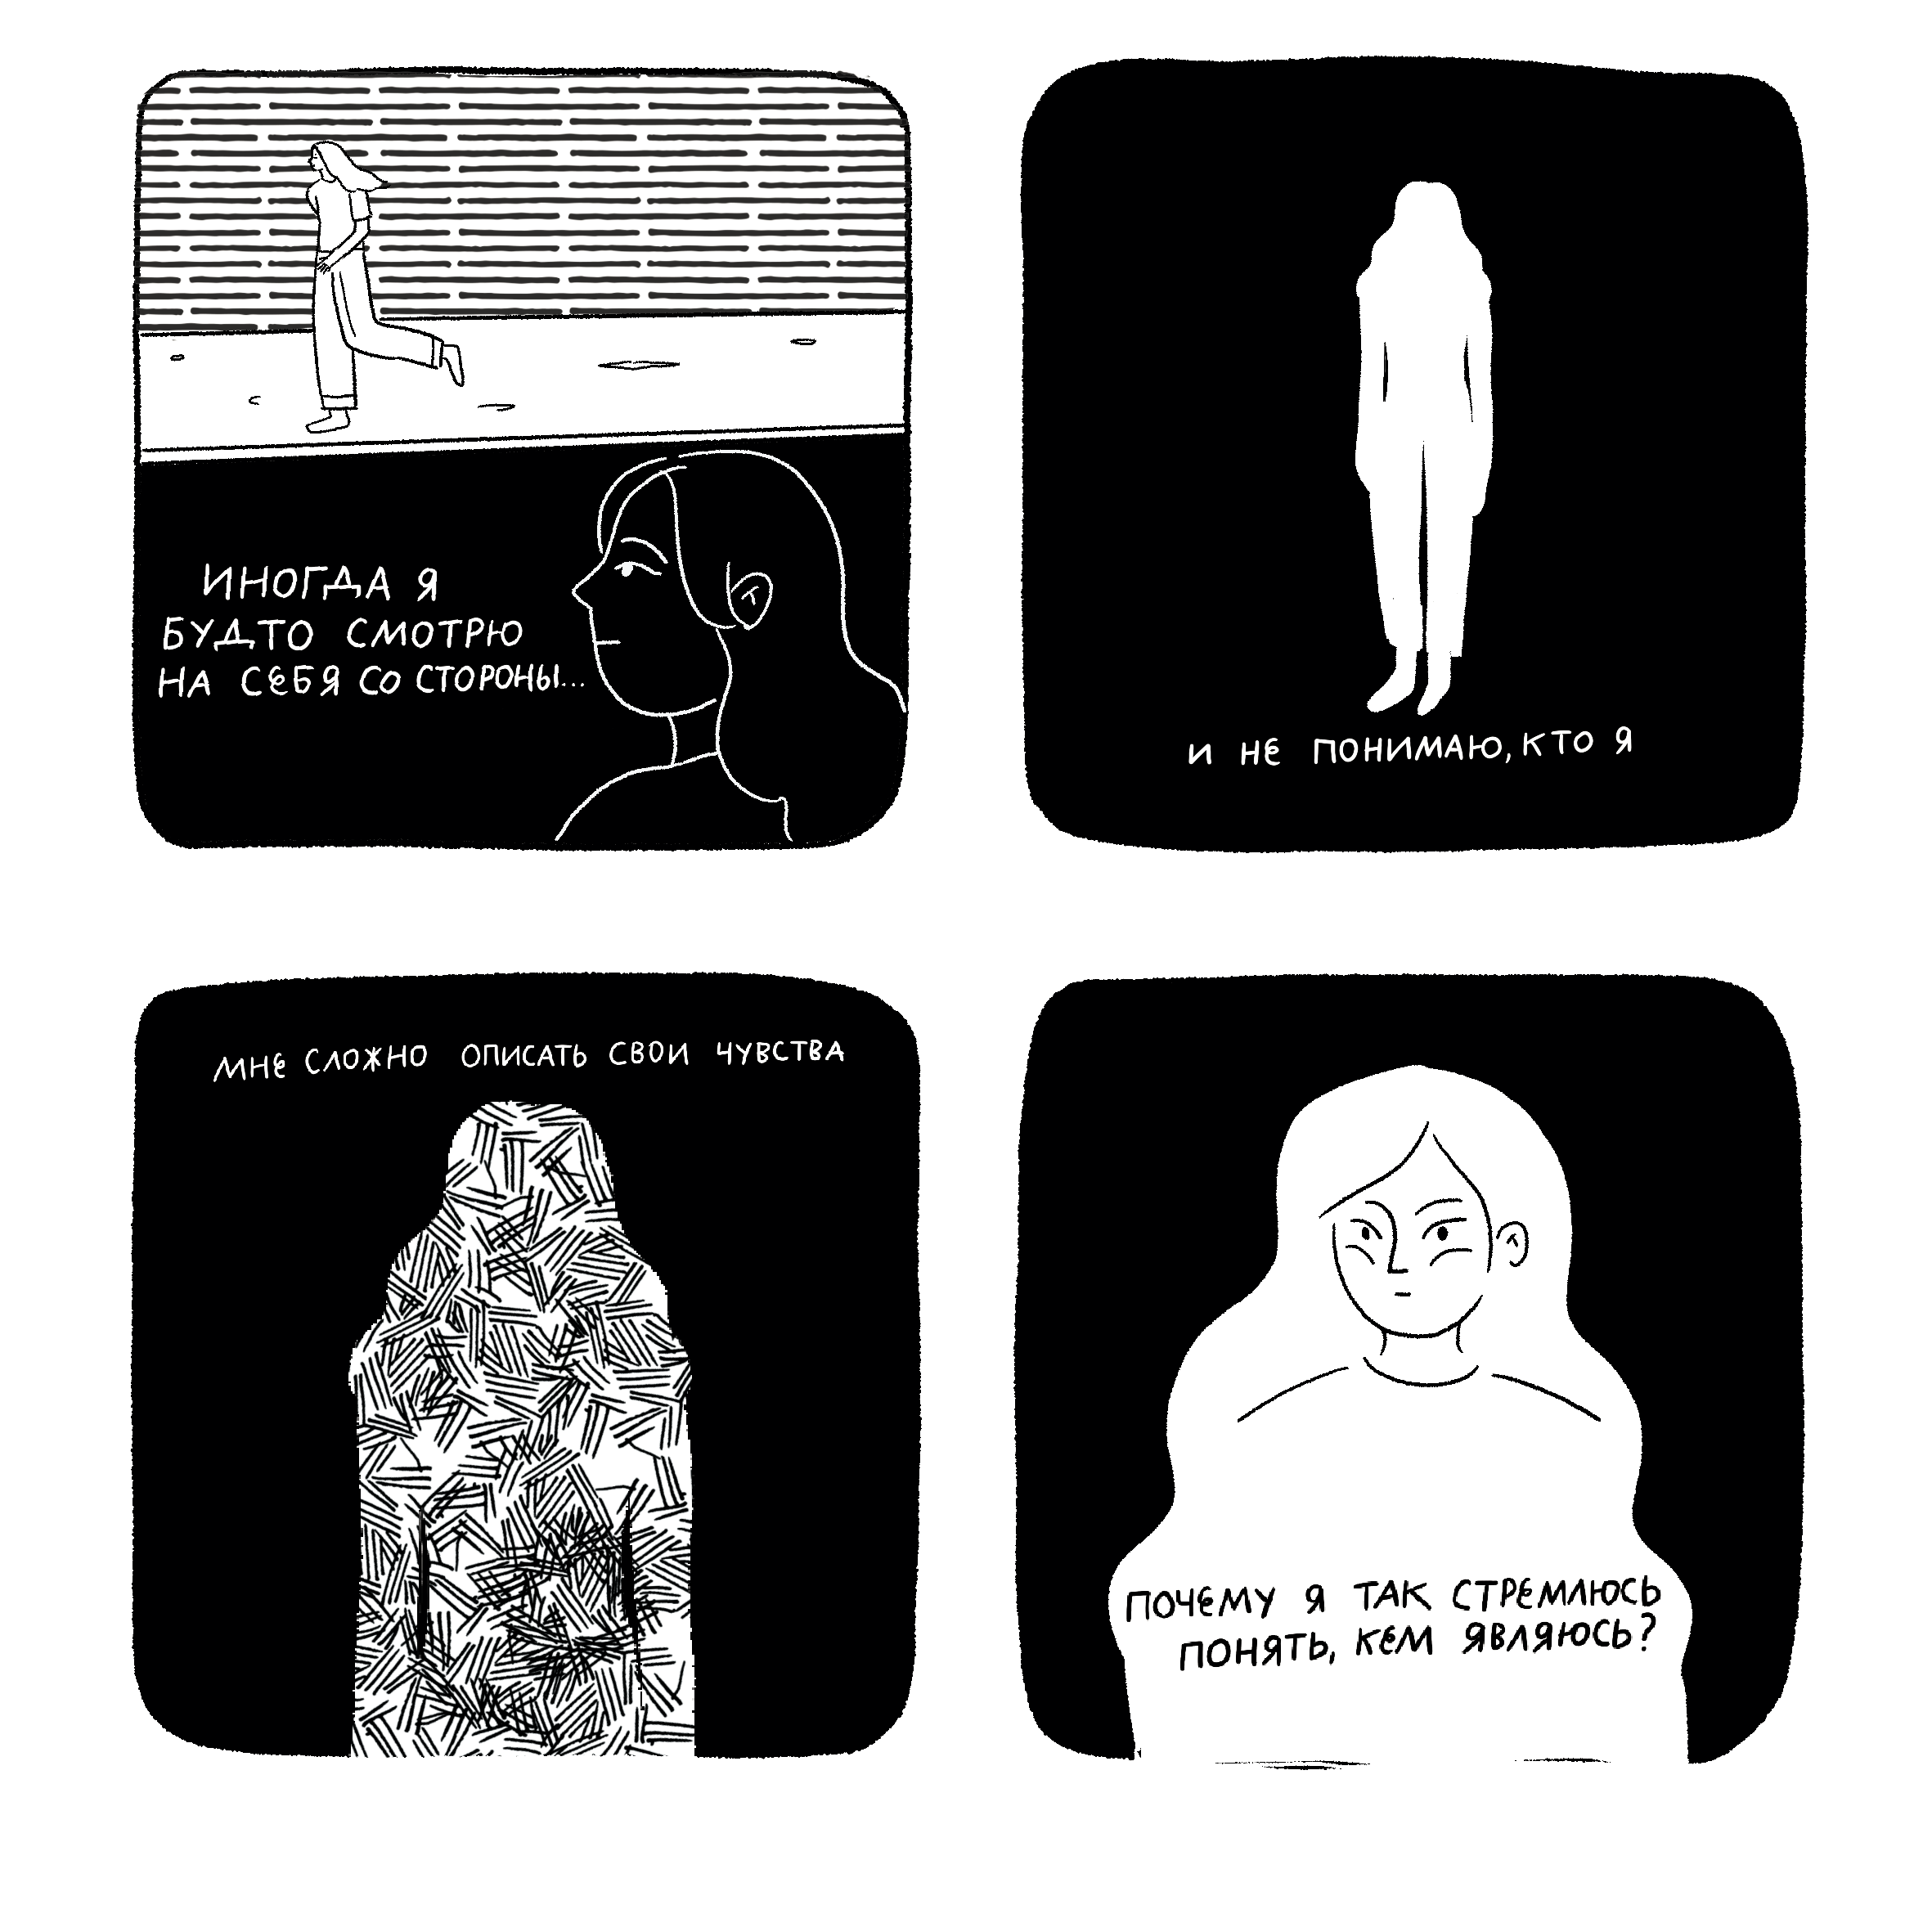 Просто о сложном: арт-директорка Manshuq выпустила комикс об идентичности